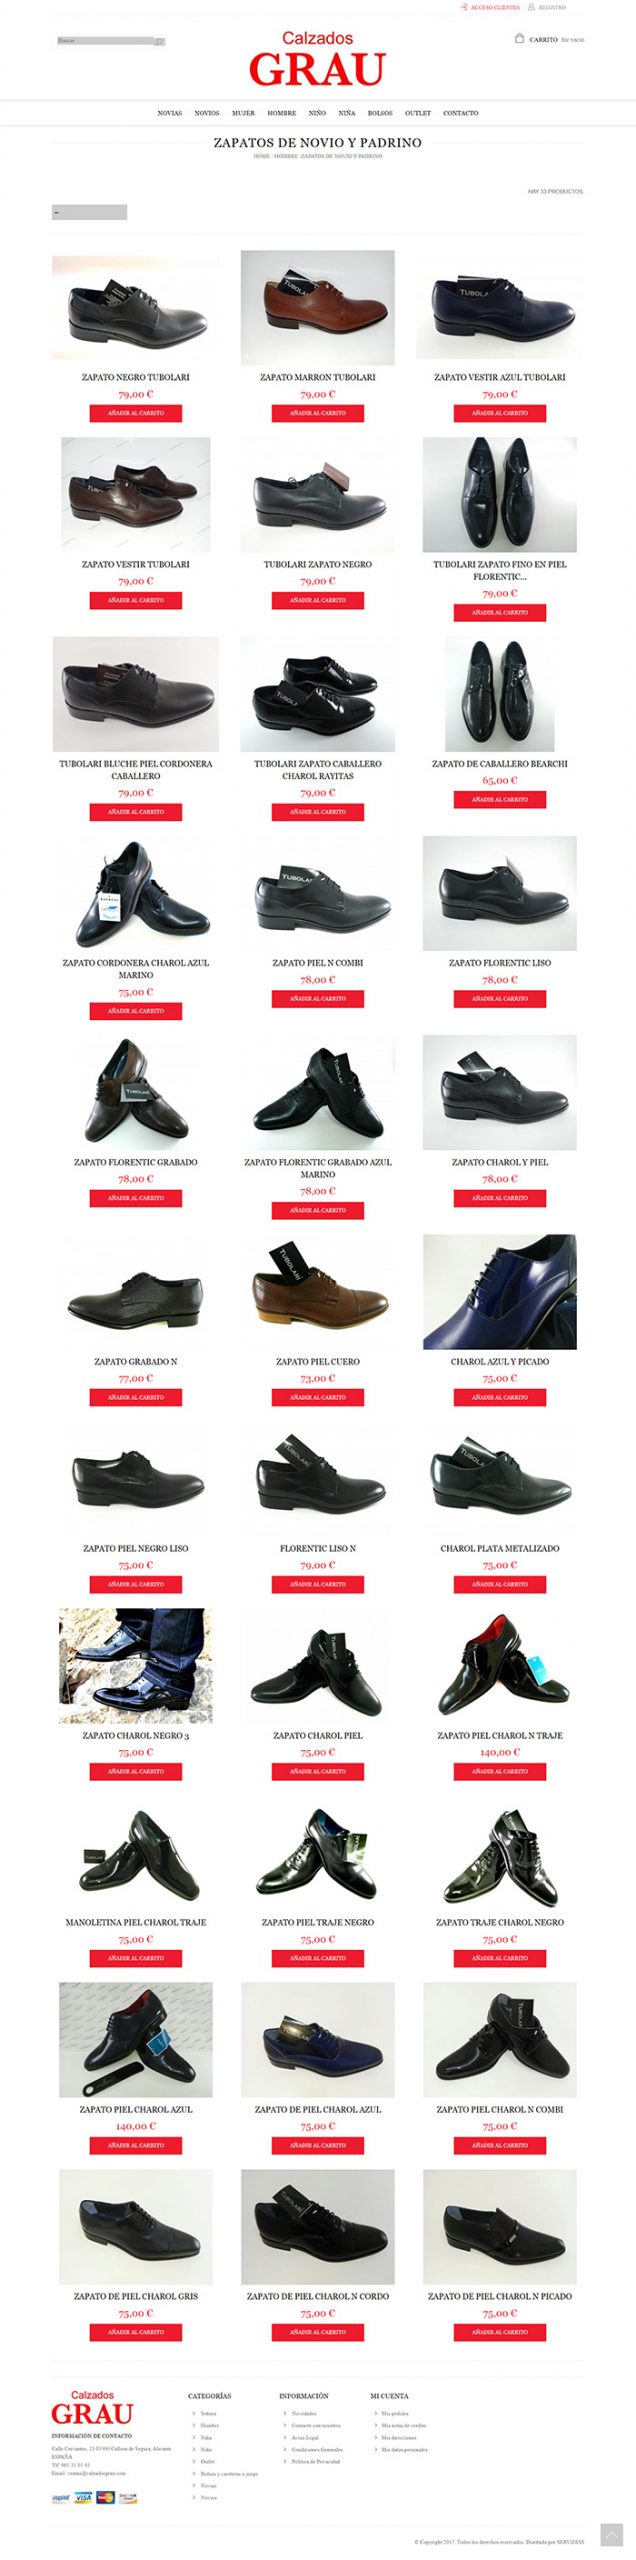 Imagen de catalogo de opciones de compra. Zapatos de hombre, masculinos de arreglar. Tienda Online Calzados Grau. Creado por Punctum Marketing